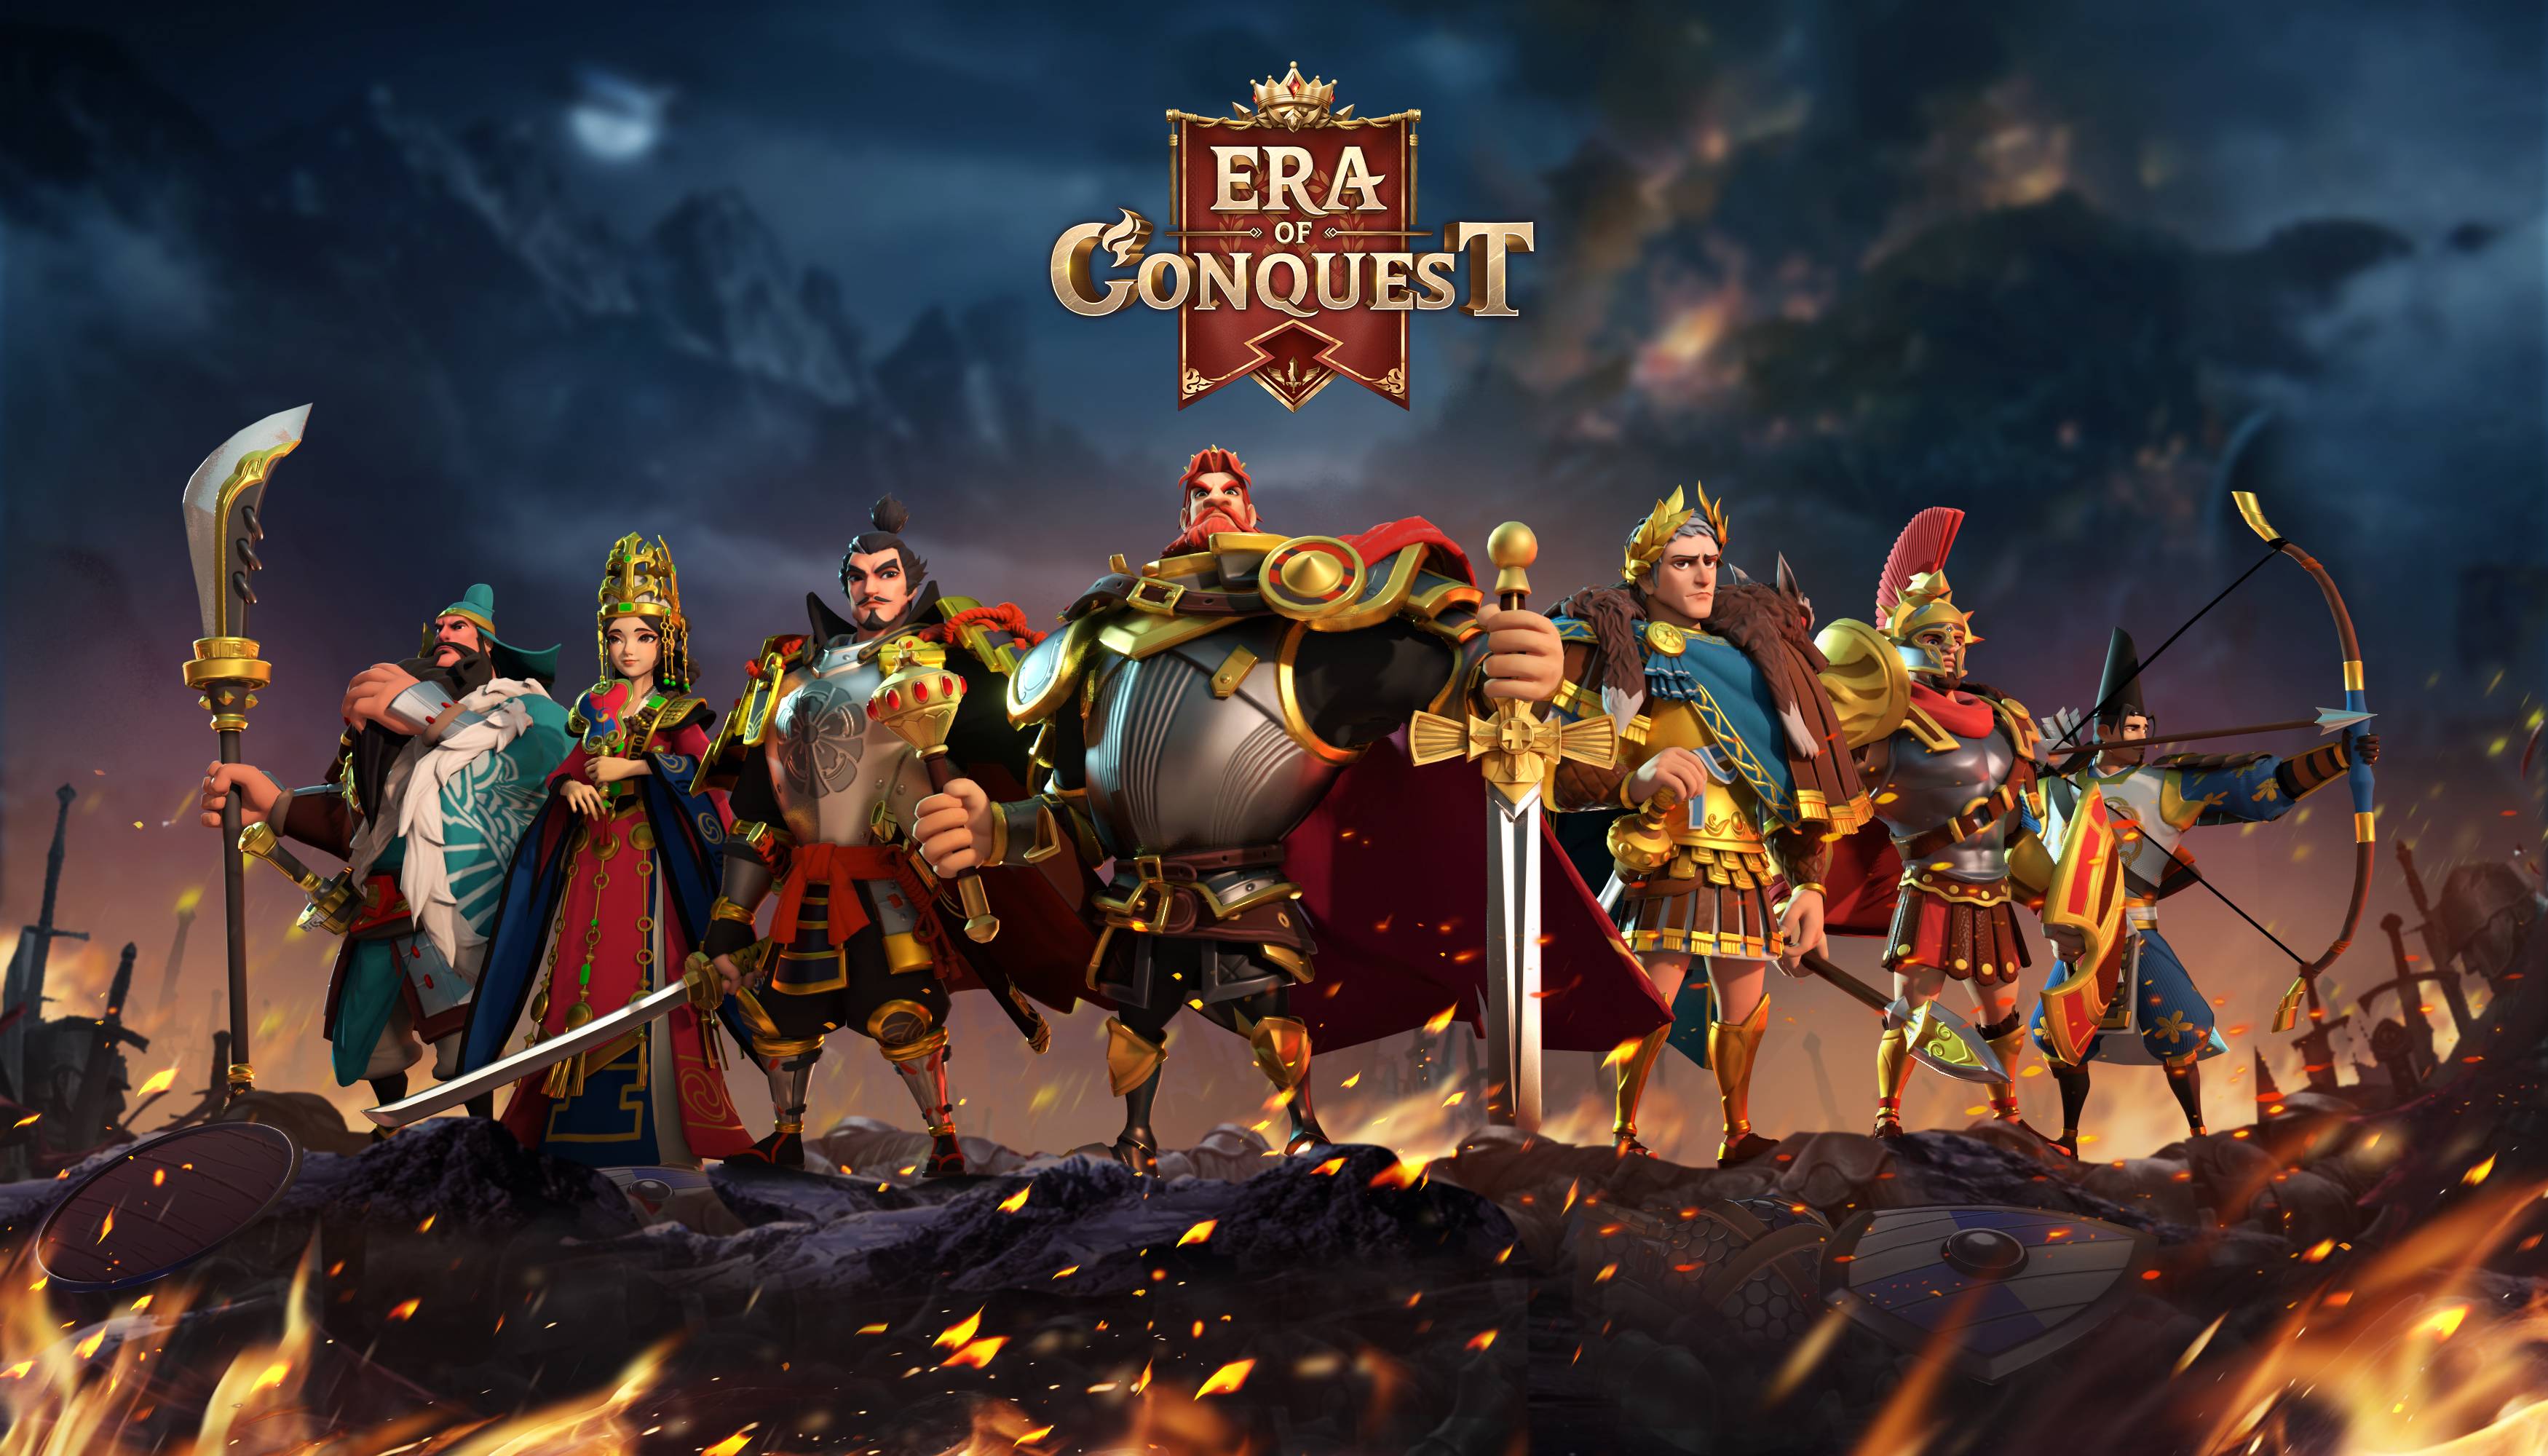 Conheça o Era of Conquest, o novo jogo de estratégia da 4399 Games!-Tutoriais  de jogos-LDPlayer